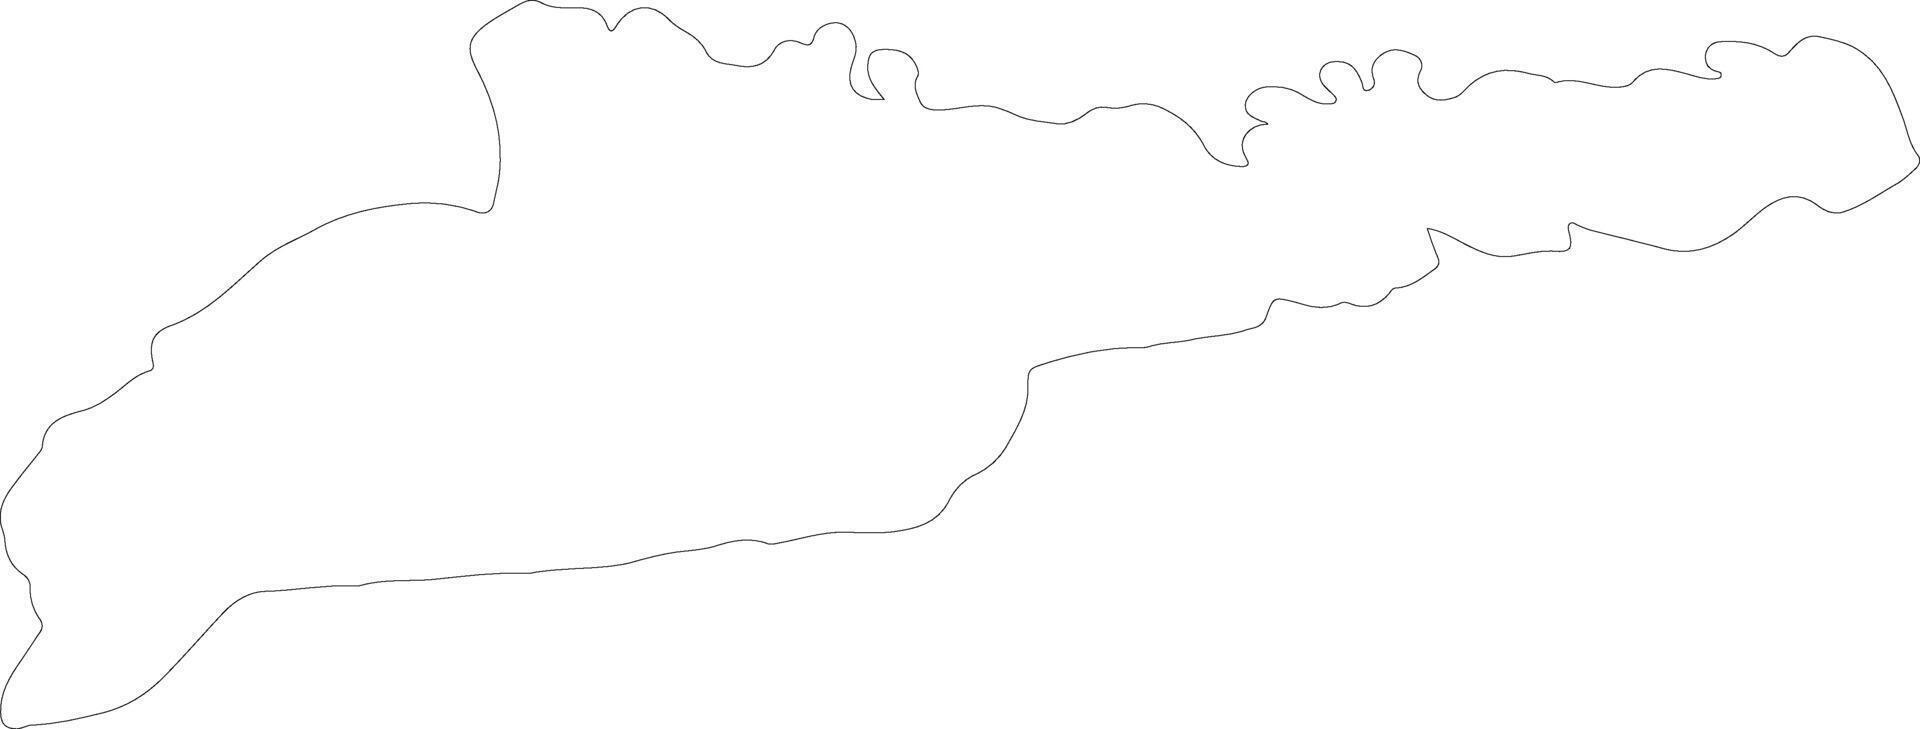 Chernivtsi Ukraine outline map vector